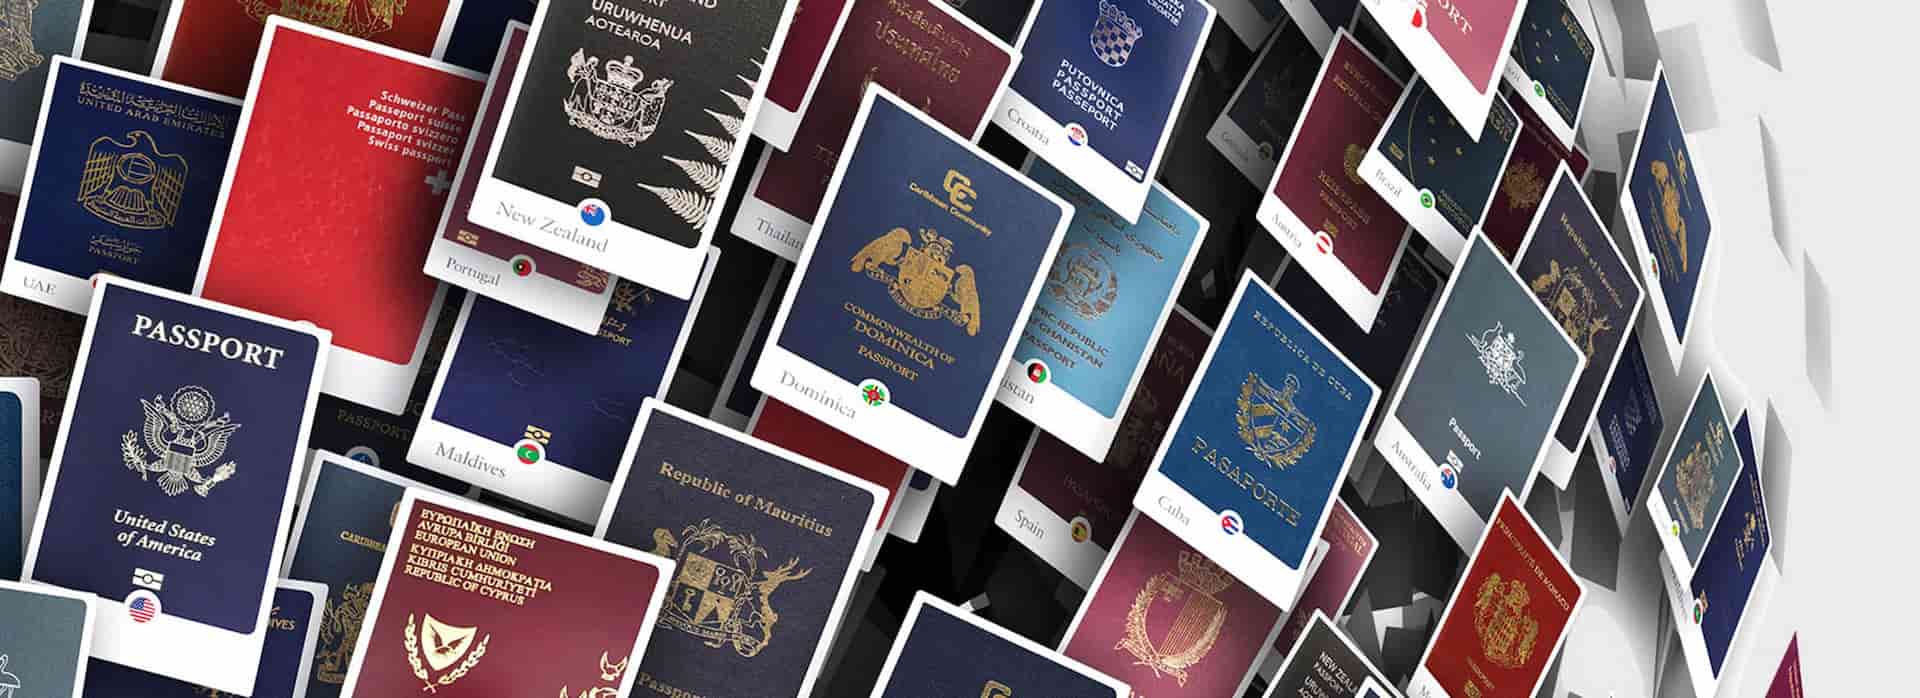 亞太區在 2021 年《亨氏護照指數》獨佔鰲頭，有望率先在大流行後復甦